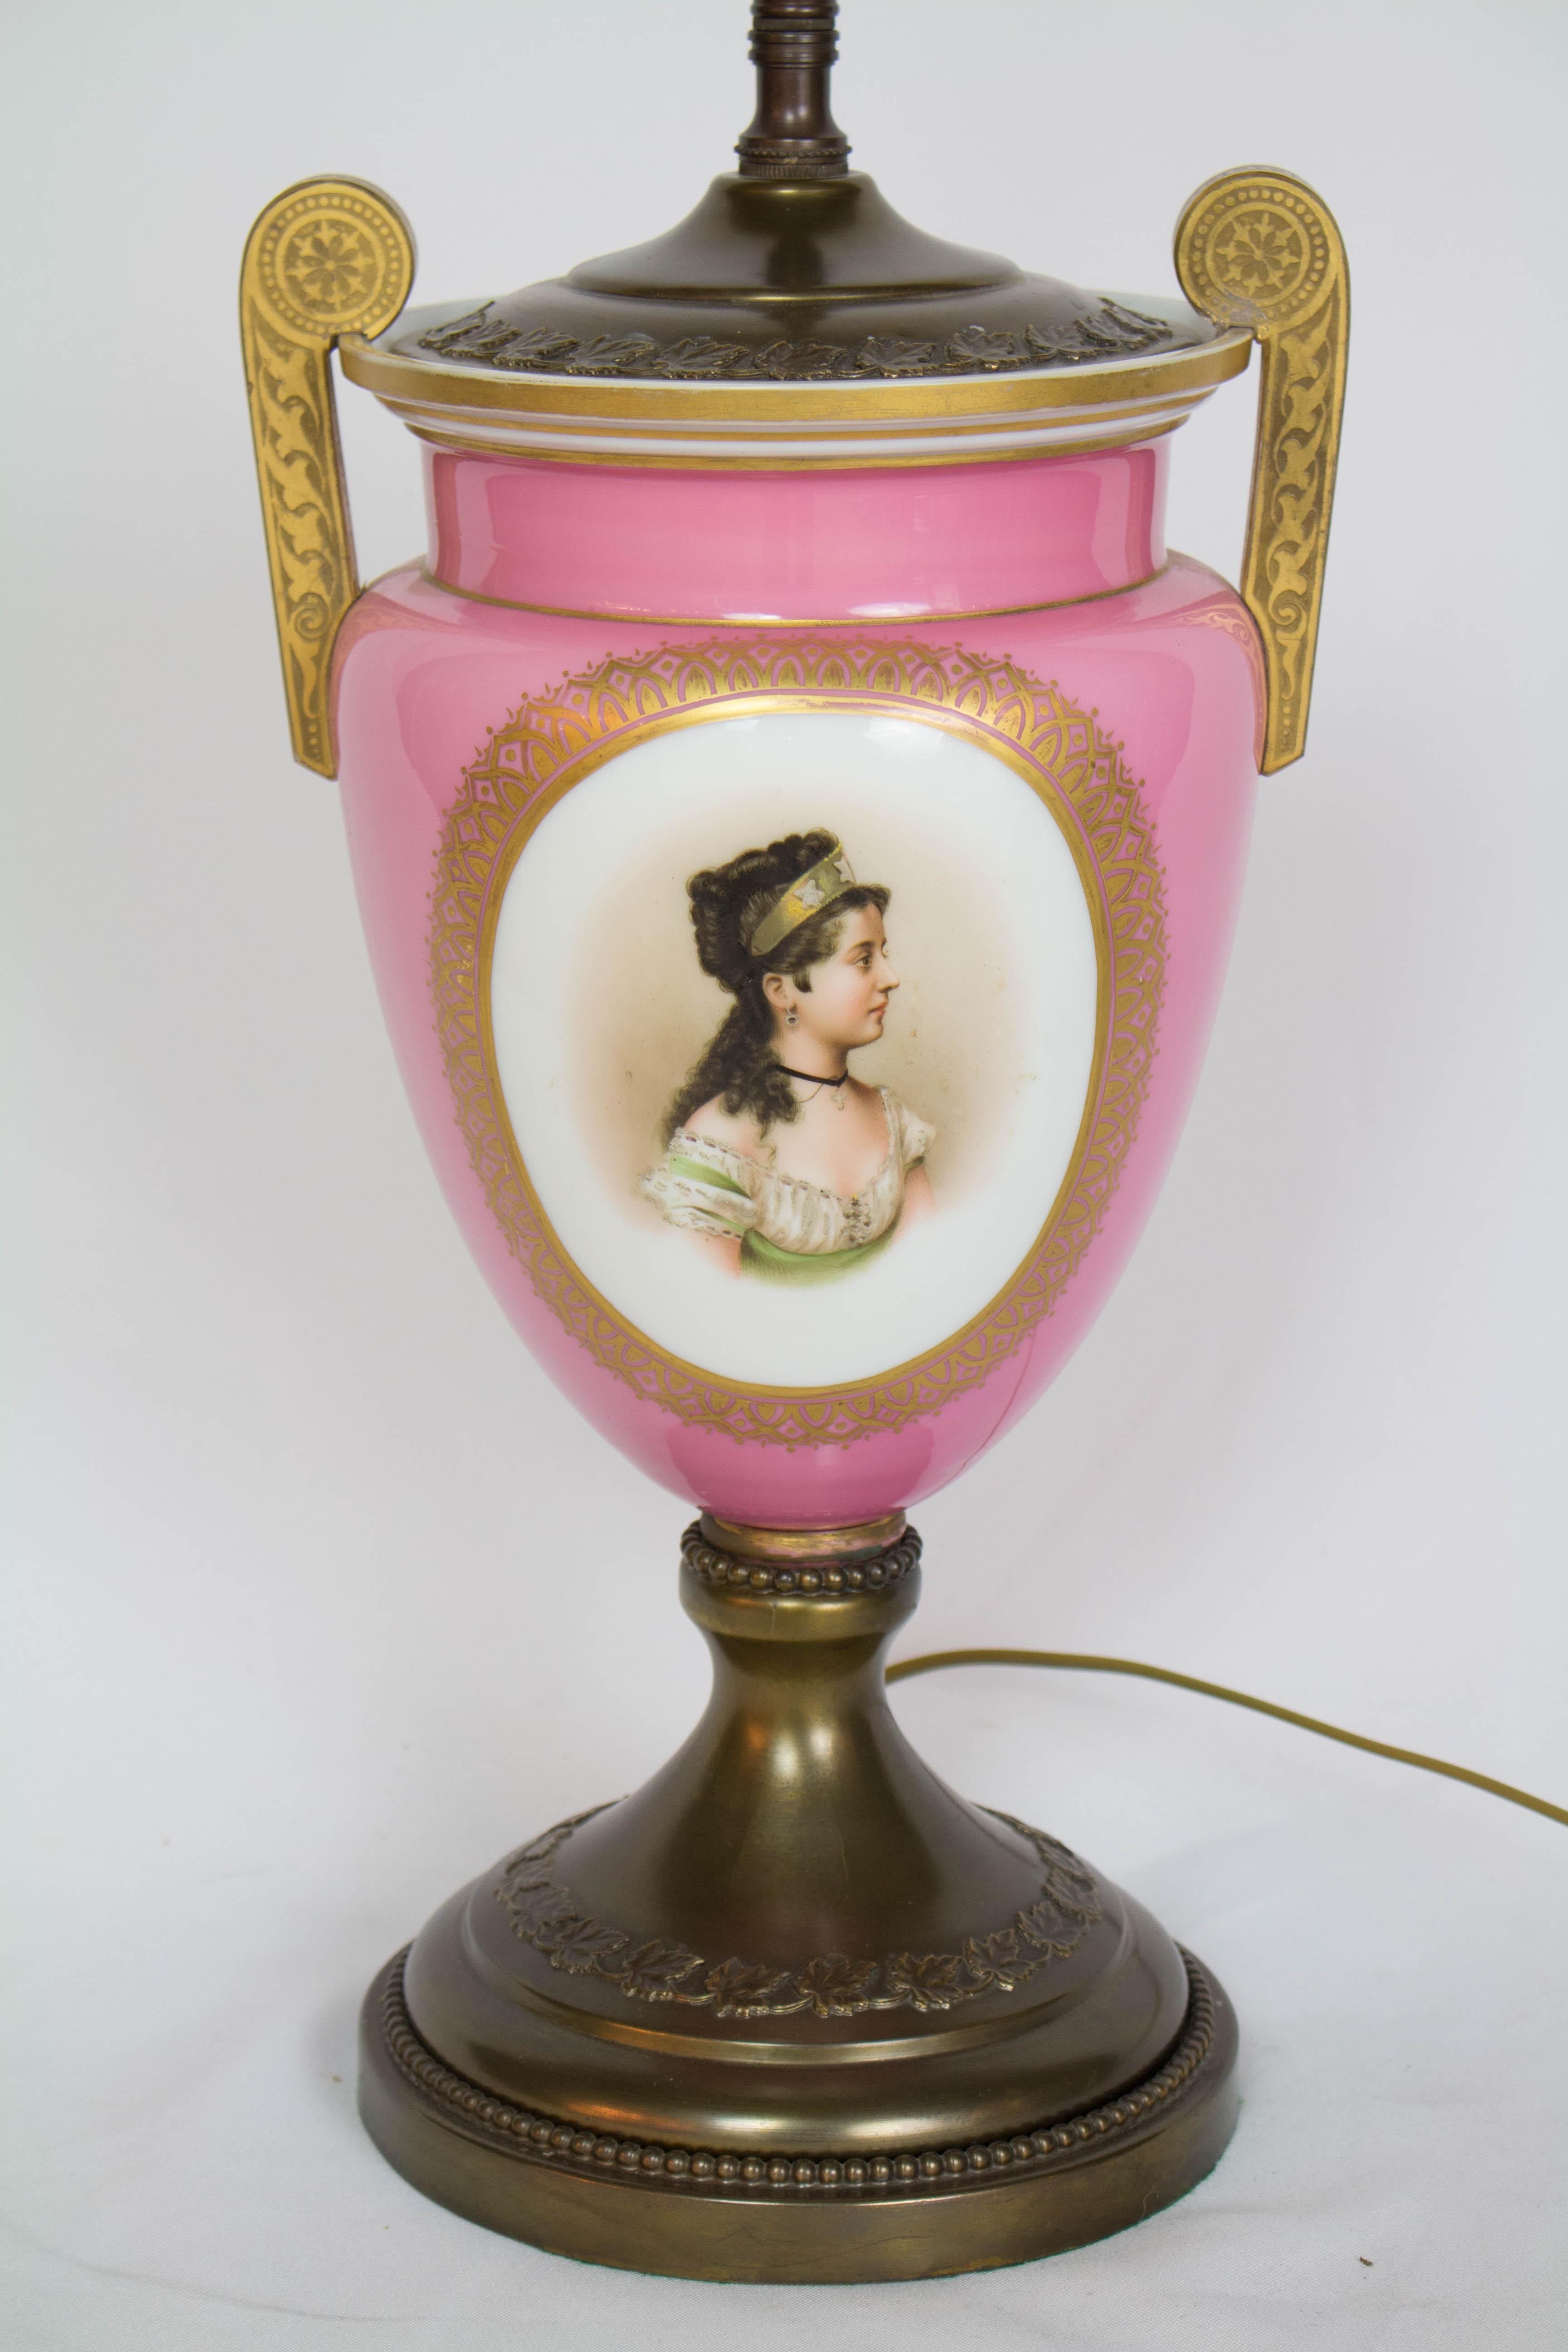 Rosa Portrait-Tischlampe.  Porträt einer jungen Frau auf einer Urne aus Glas und Emaille mit Metallsockel.  Das Porträt wurde mit sehr feinen Details und einem detaillierten Goldrand angefertigt.  Böhmisch, 19. Jahrhundert, ca. 1880.  Anfang des 20.